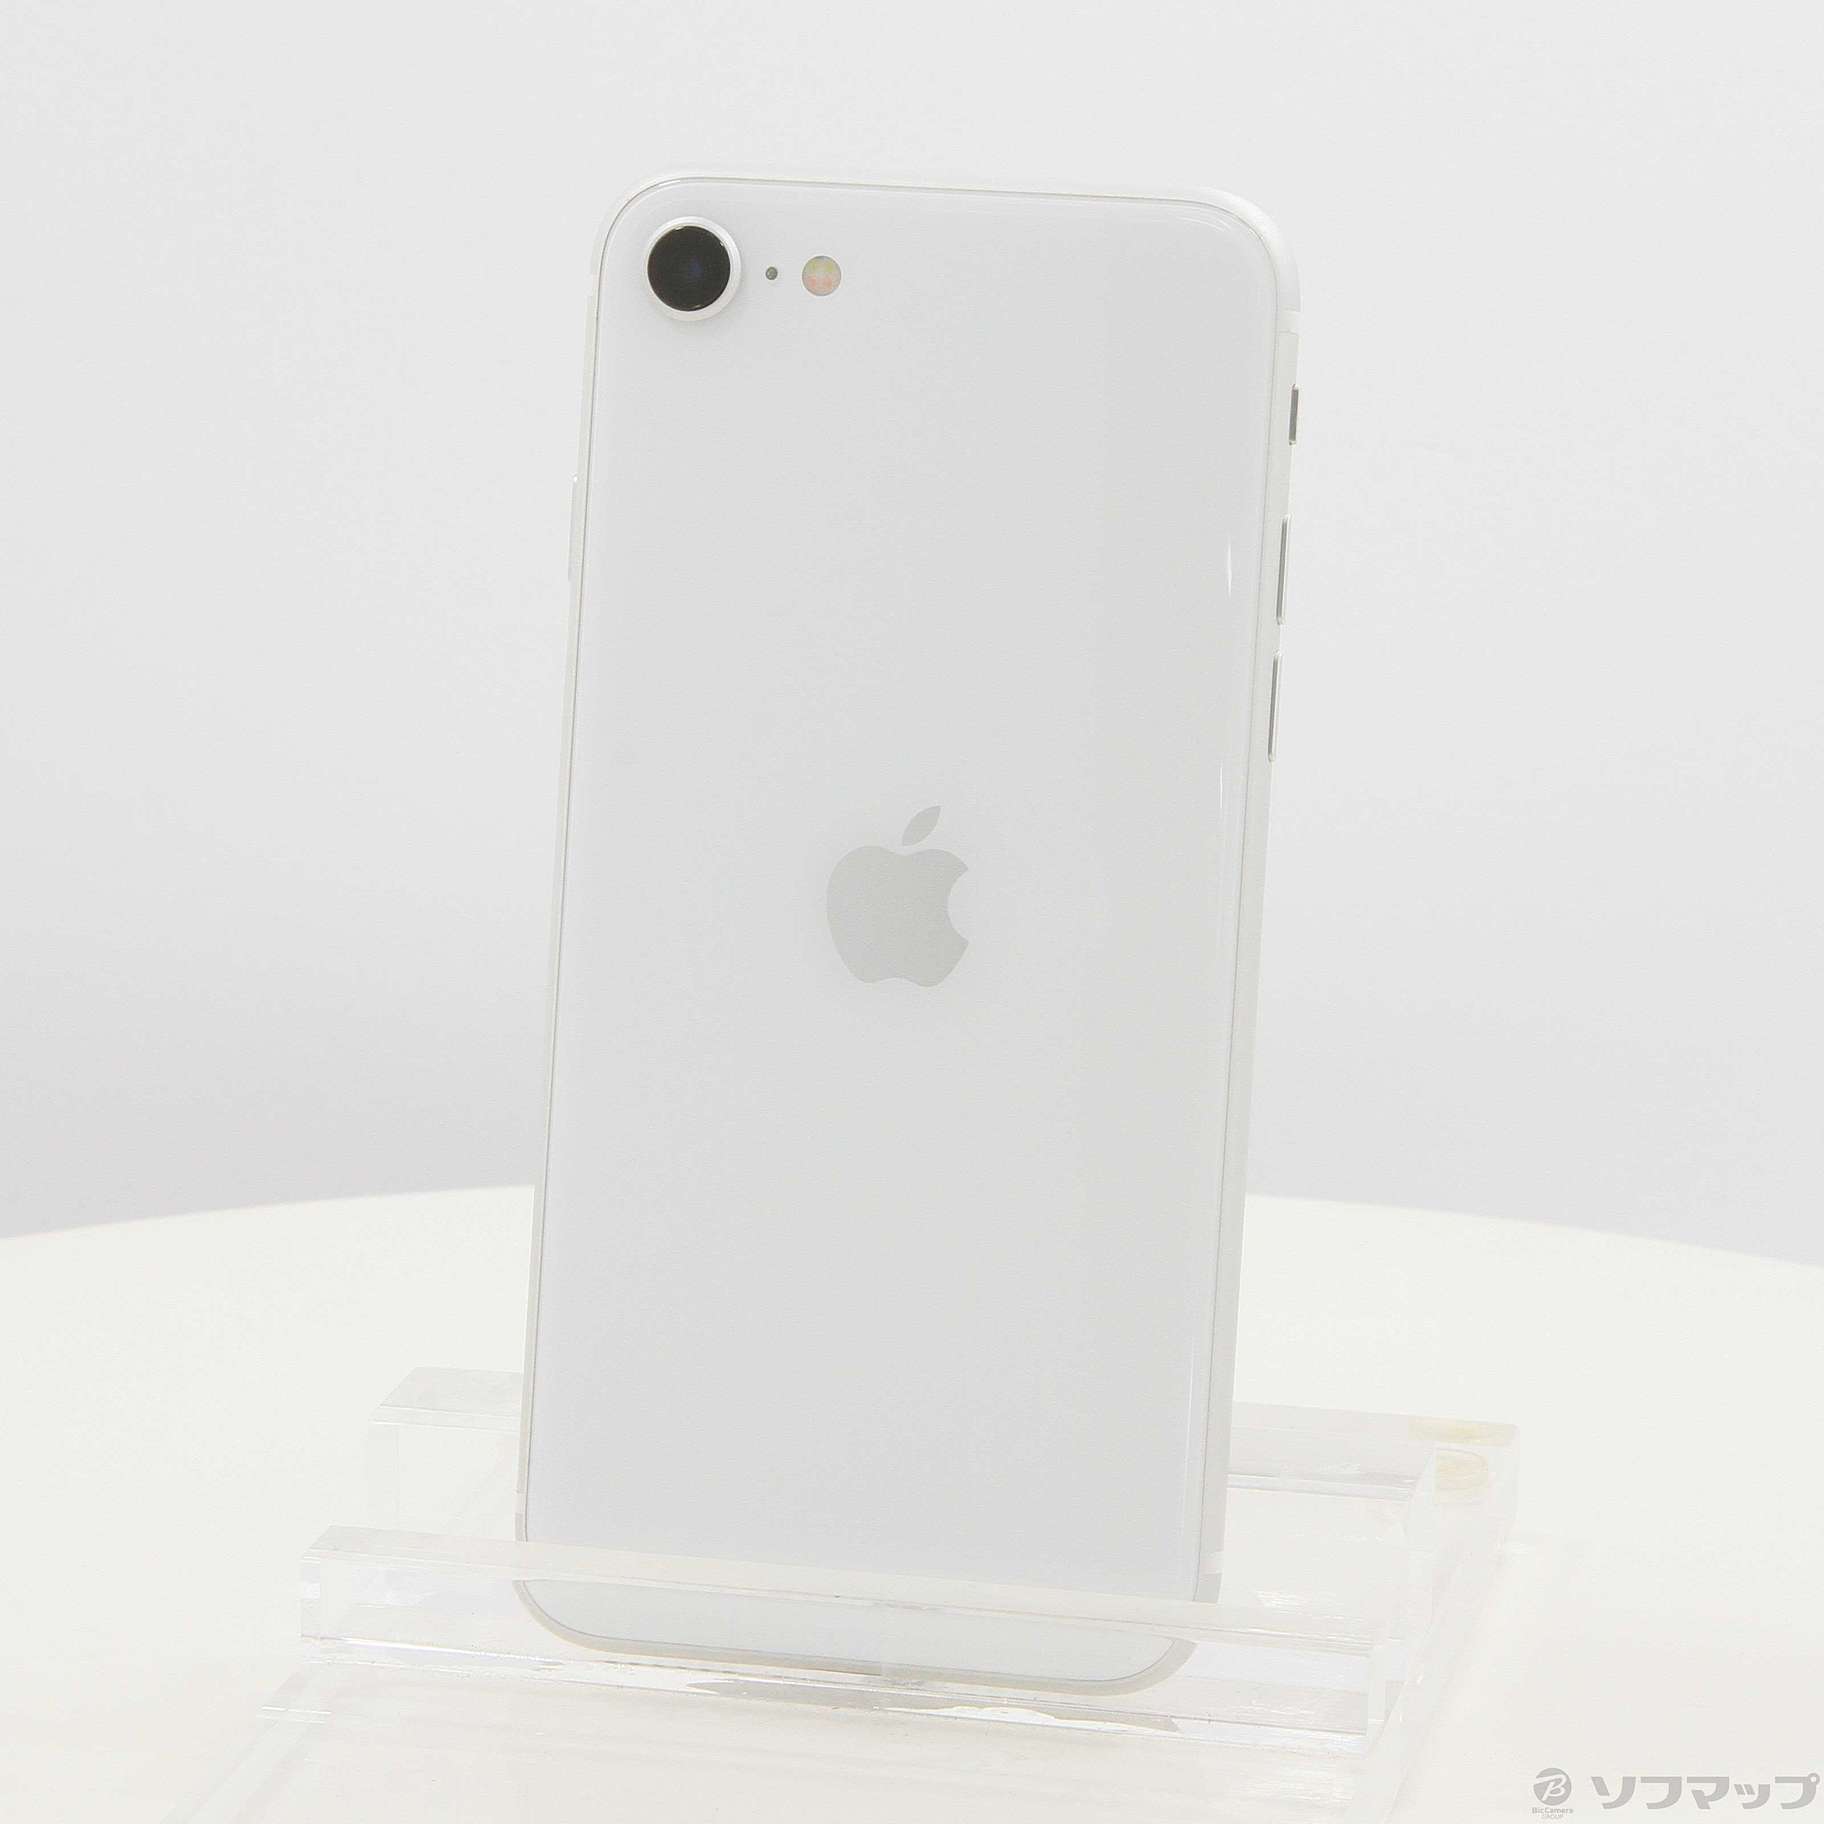 iPhone SE 第2世代 (SE2) ホワイト 256GB SIMフリー